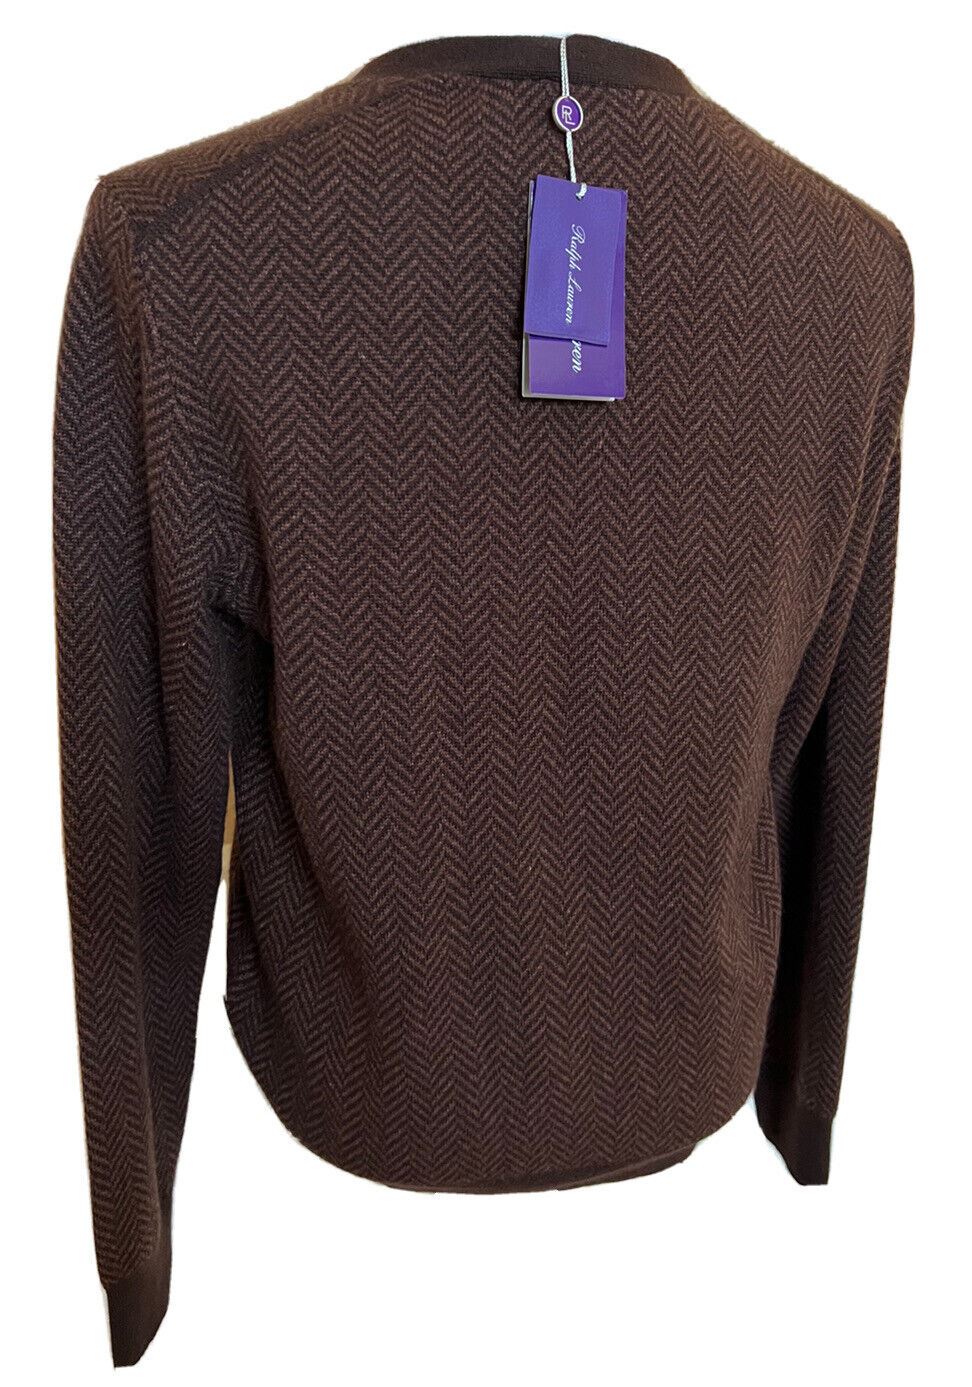 Neu mit Etikett: 1695 $ Ralph Lauren Purple Label Kaschmirbrauner Cardigan L Hergestellt in Italien